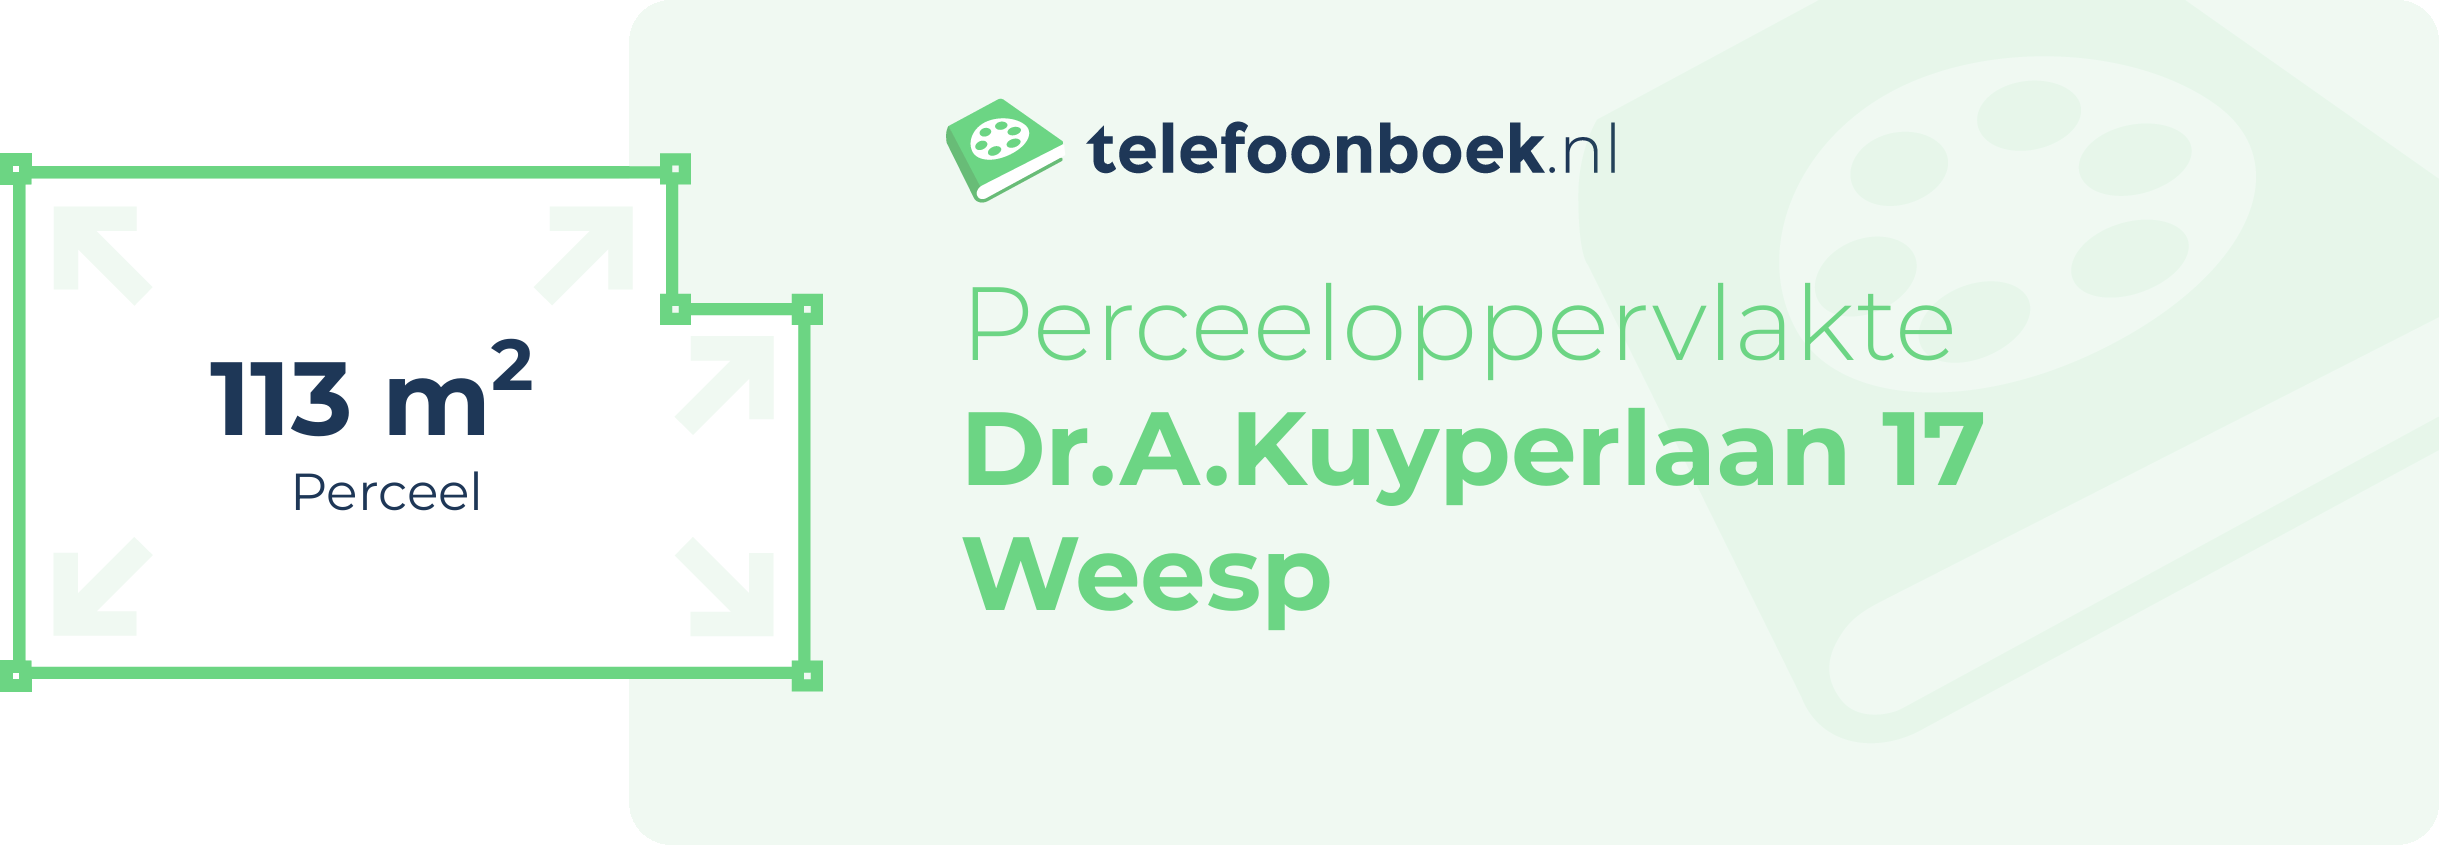 Perceeloppervlakte Dr.A.Kuyperlaan 17 Weesp